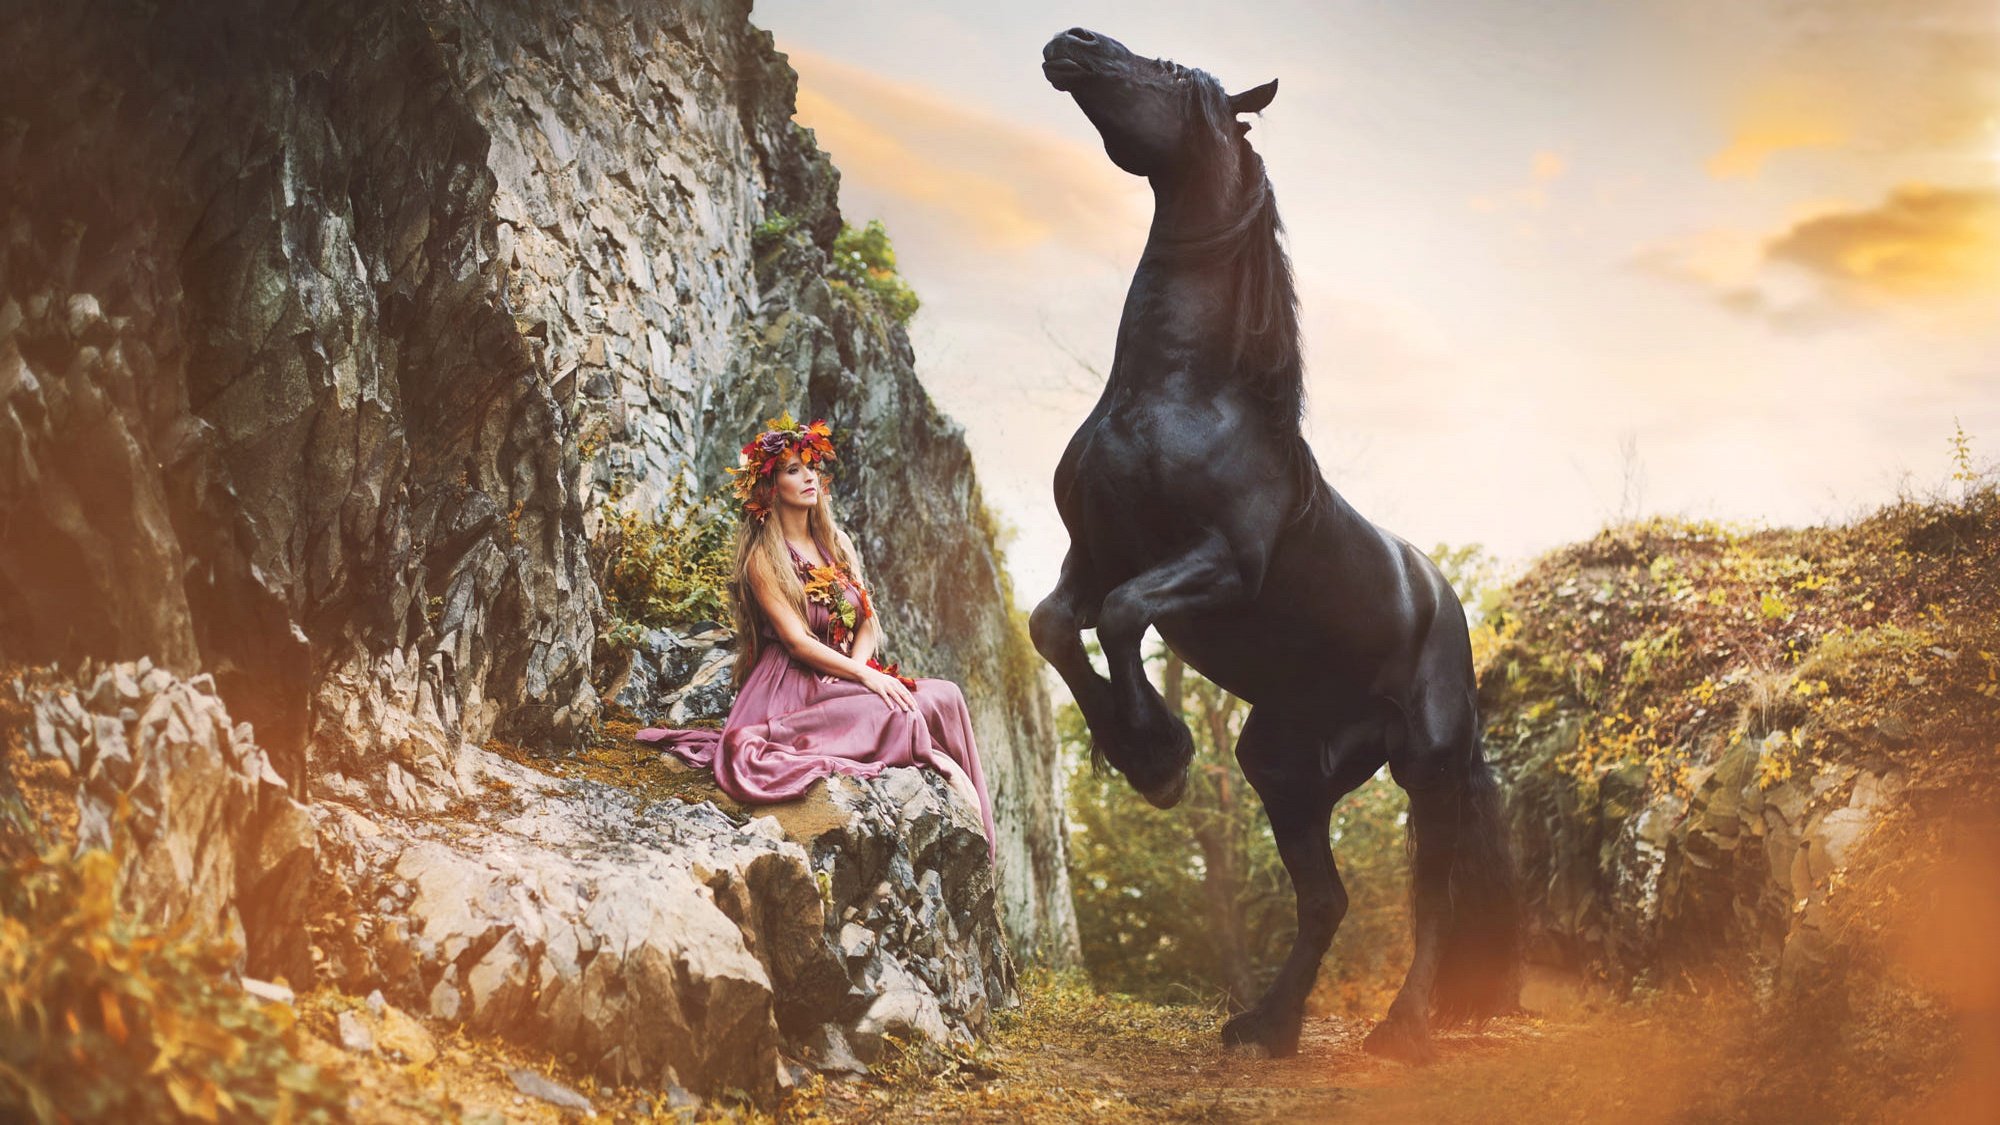 Верховая женщина. Фотосессия с лошадьми. Женщина на коне. Девушка верхом на лошади. Девушка на коне фэнтези.